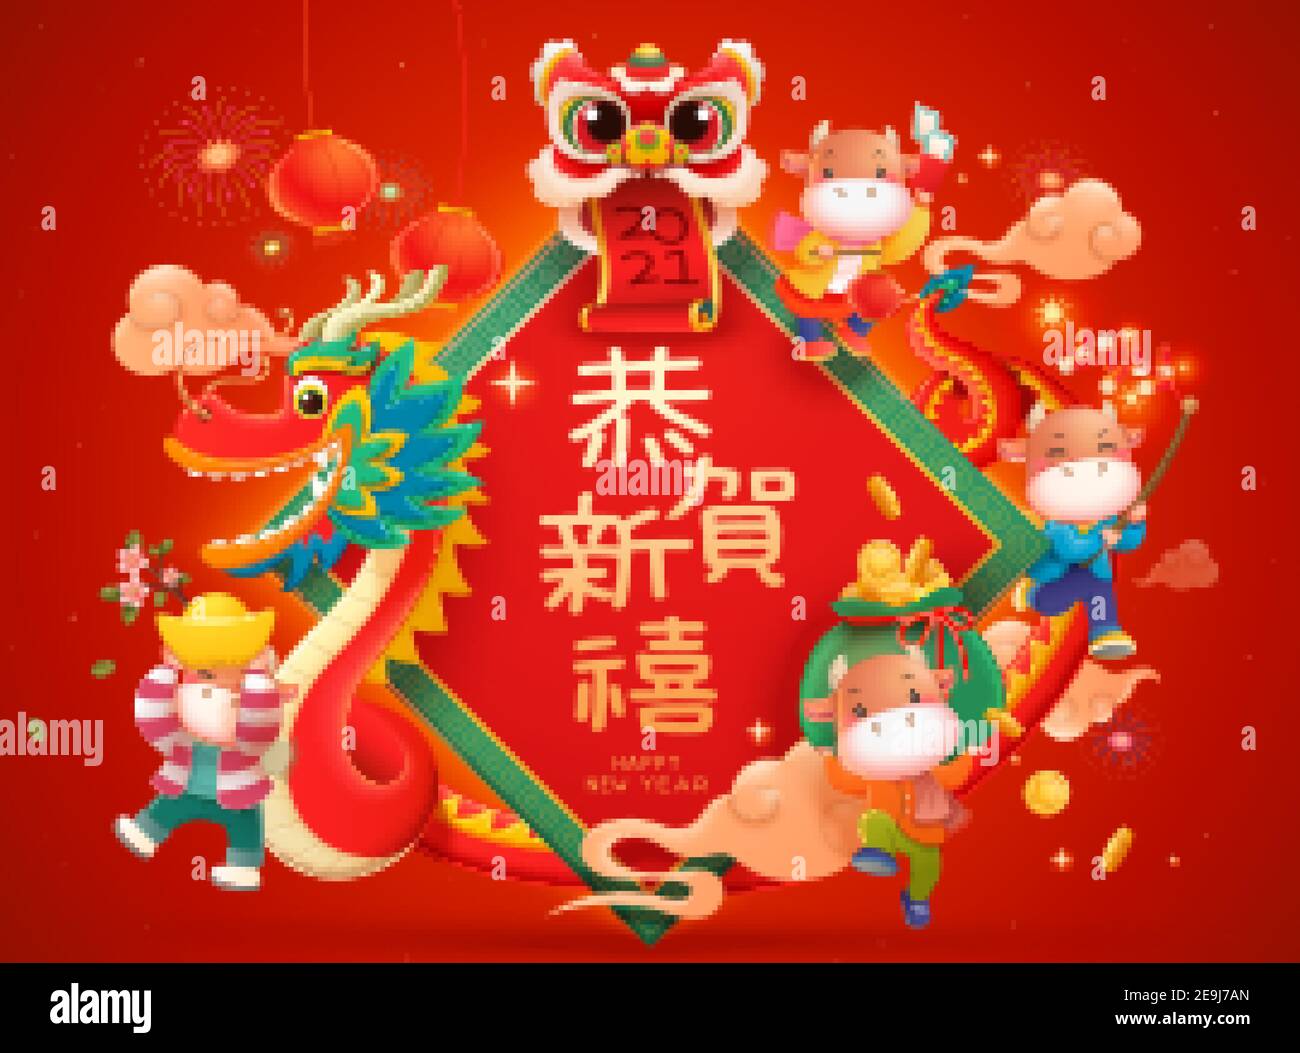 CNY Baby Kühe spielen Löwen und Drachen tanzen, hängen zusammen mit traditionellen Sachen. Frohes Neues Jahr geschrieben in chinesischem Text auf Riesen doufang zurück Stock Vektor